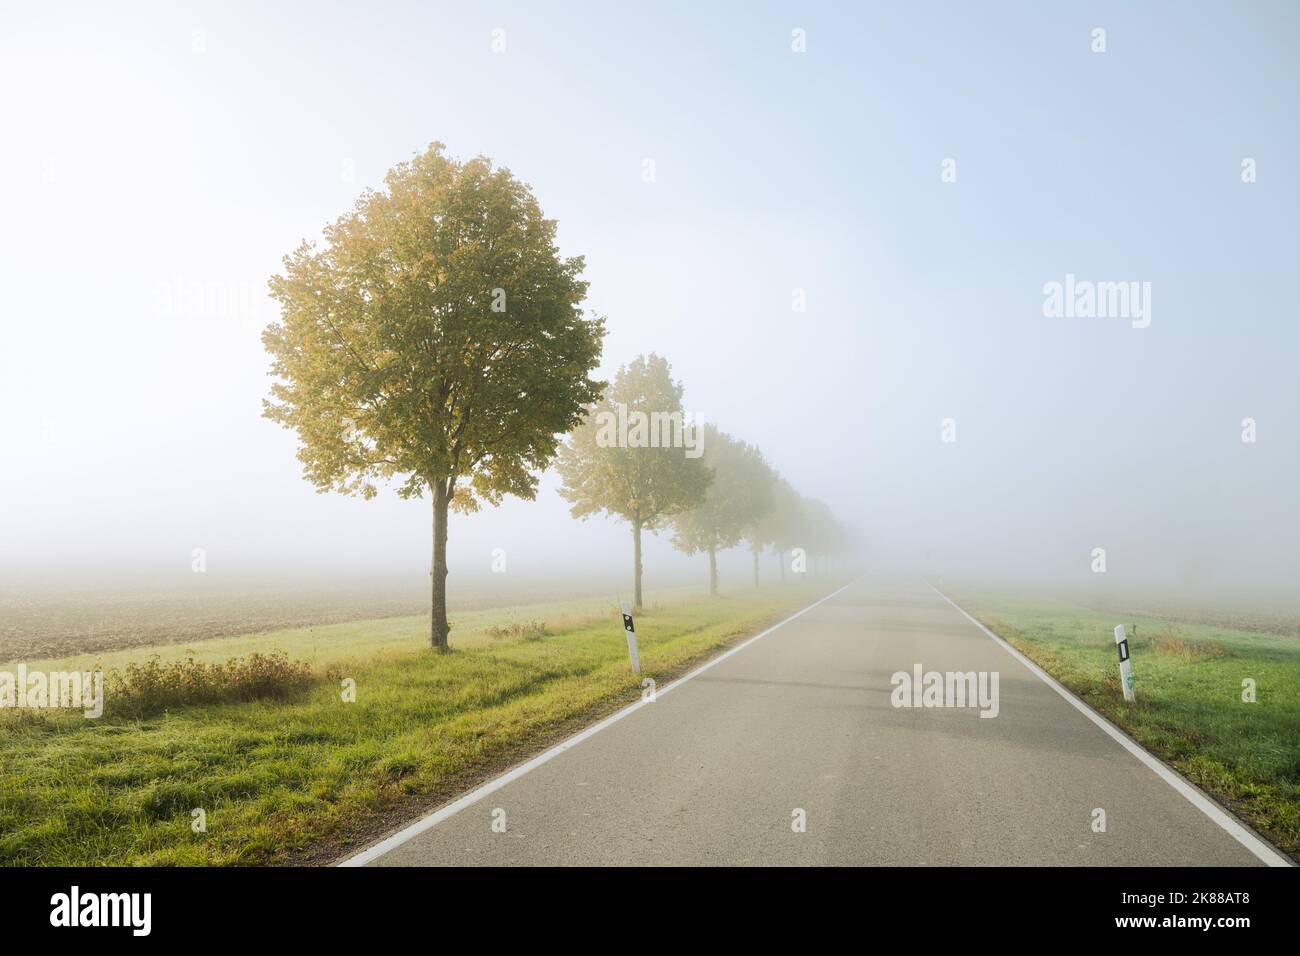 Une route de campagne entre les champs verts passe de la lumière chaude et ensoleillée au brouillard opaque du matin. Banque D'Images